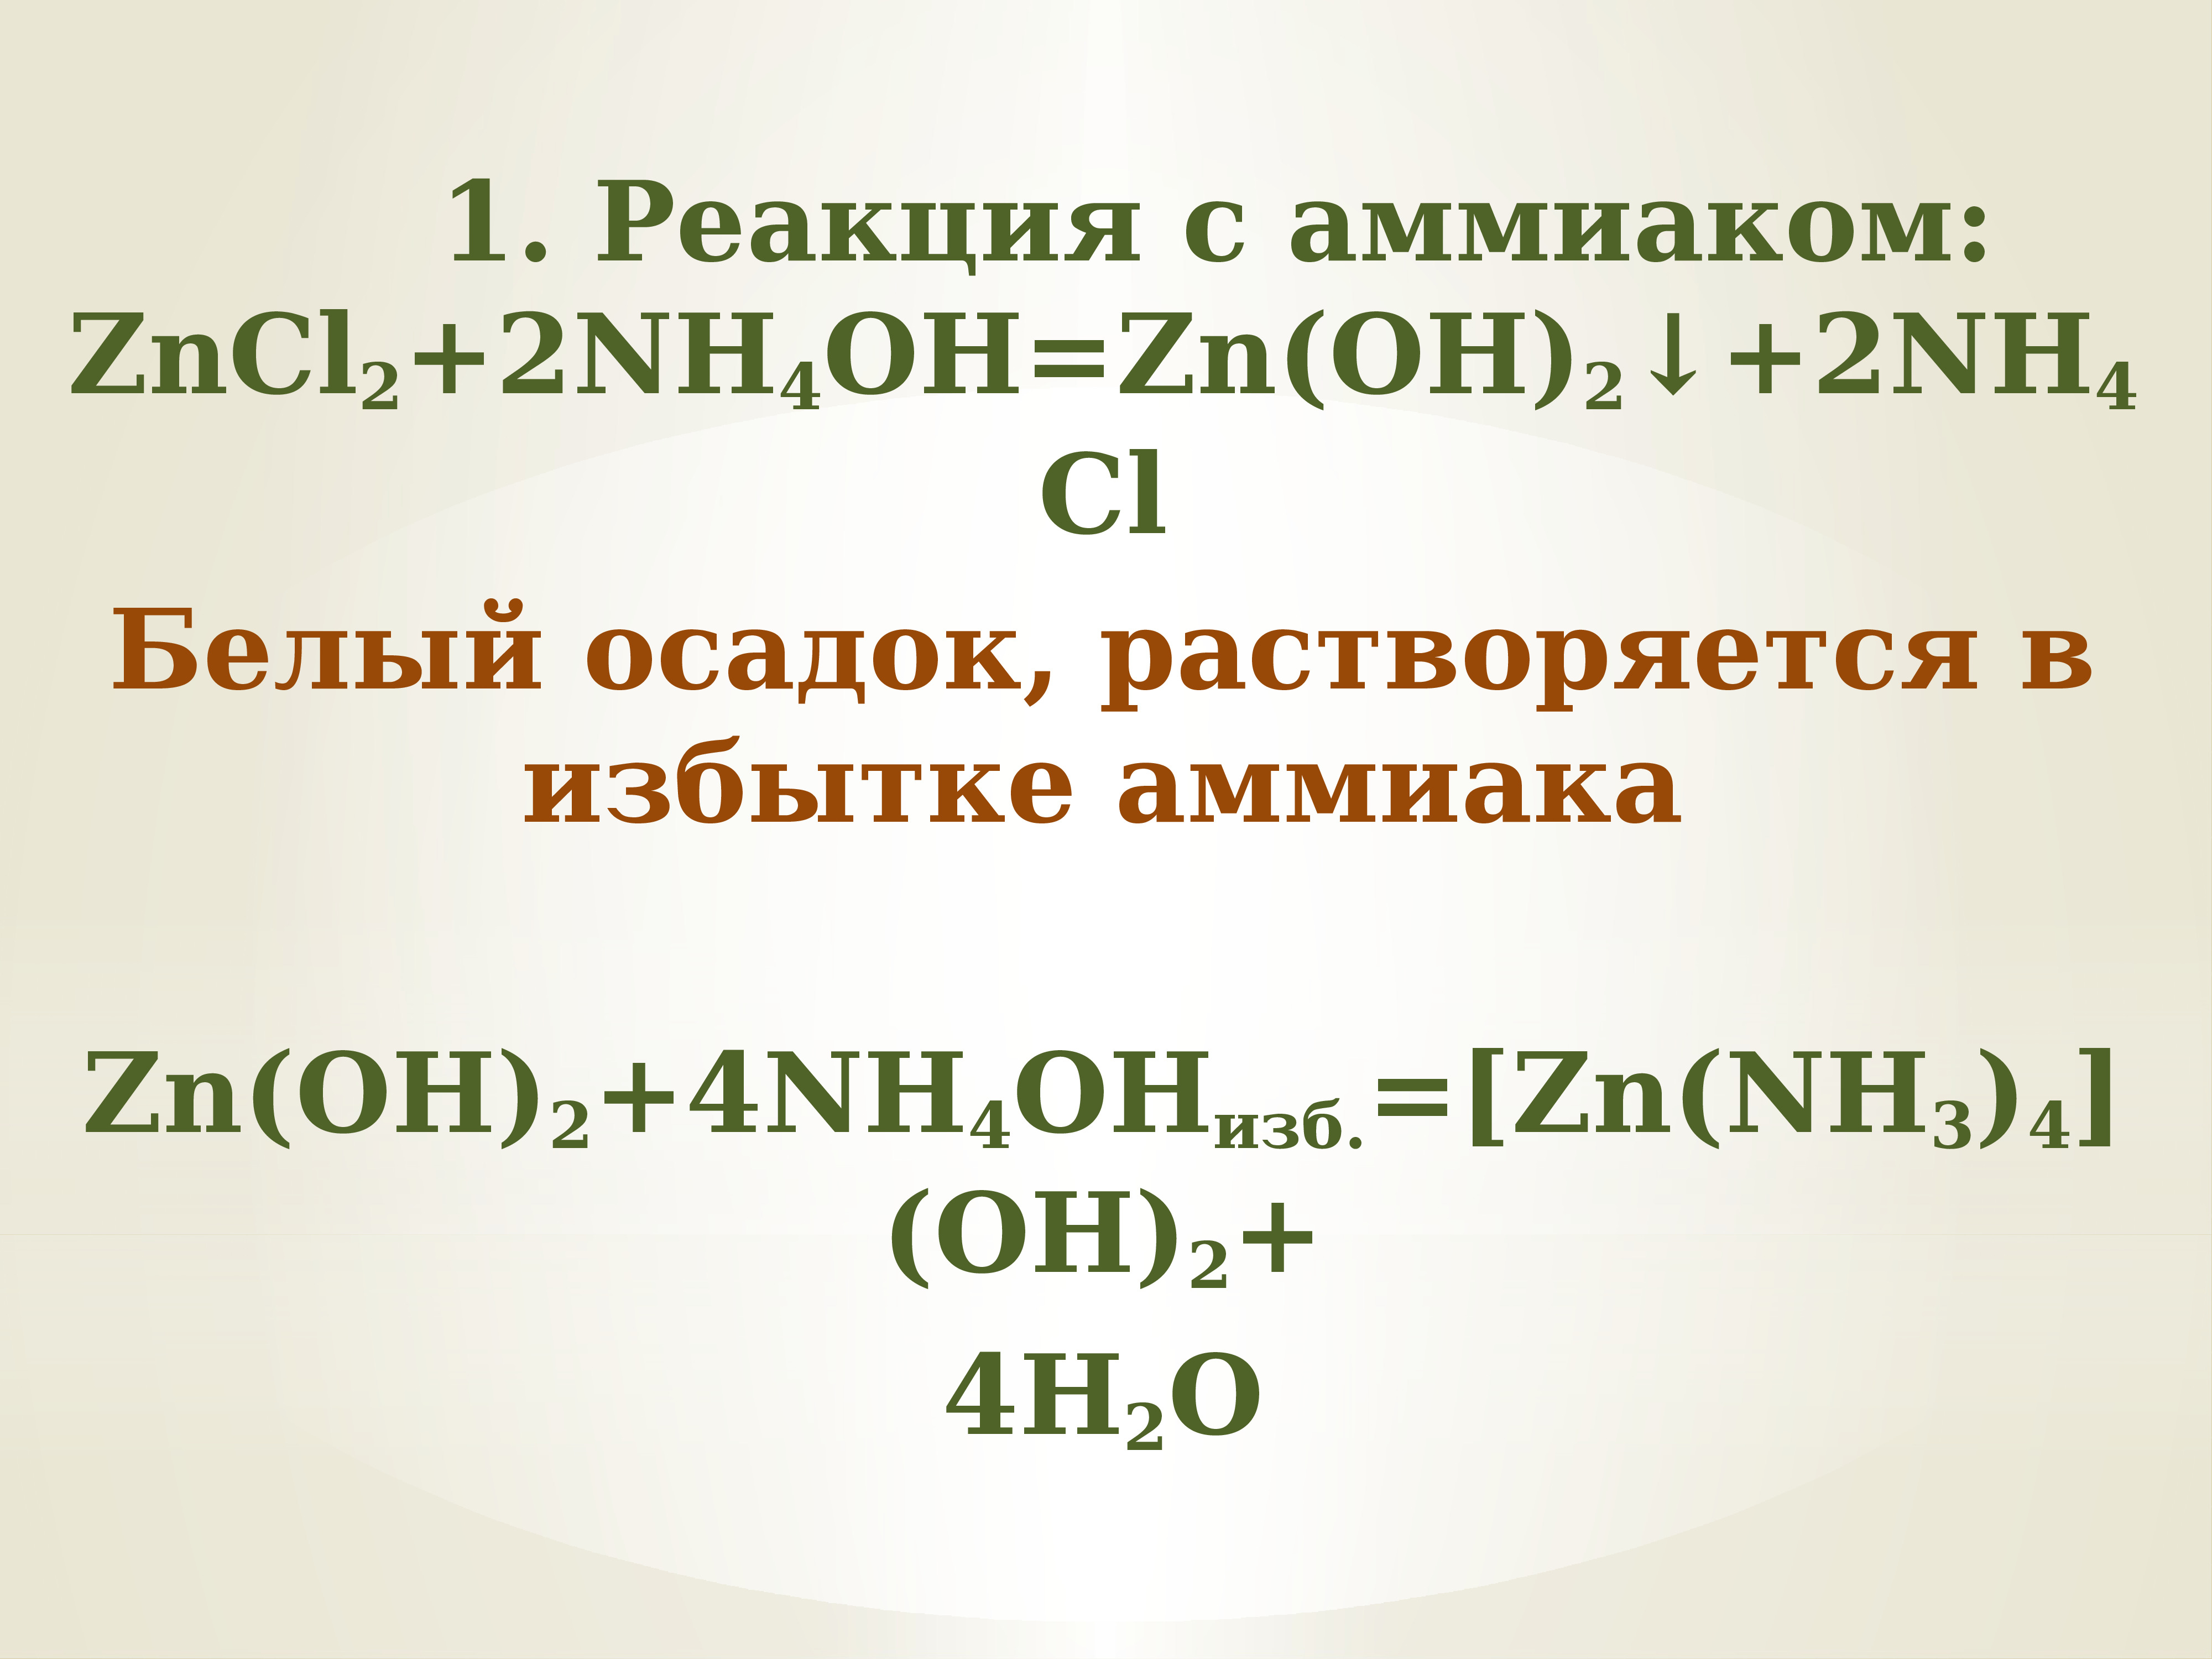 Zn oh 2 zncl. Zncl2 nh3 h2o. ZN Oh 2 nh4oh. Zncl2 nh4oh. [ZN(nh3)4](Oh)2.